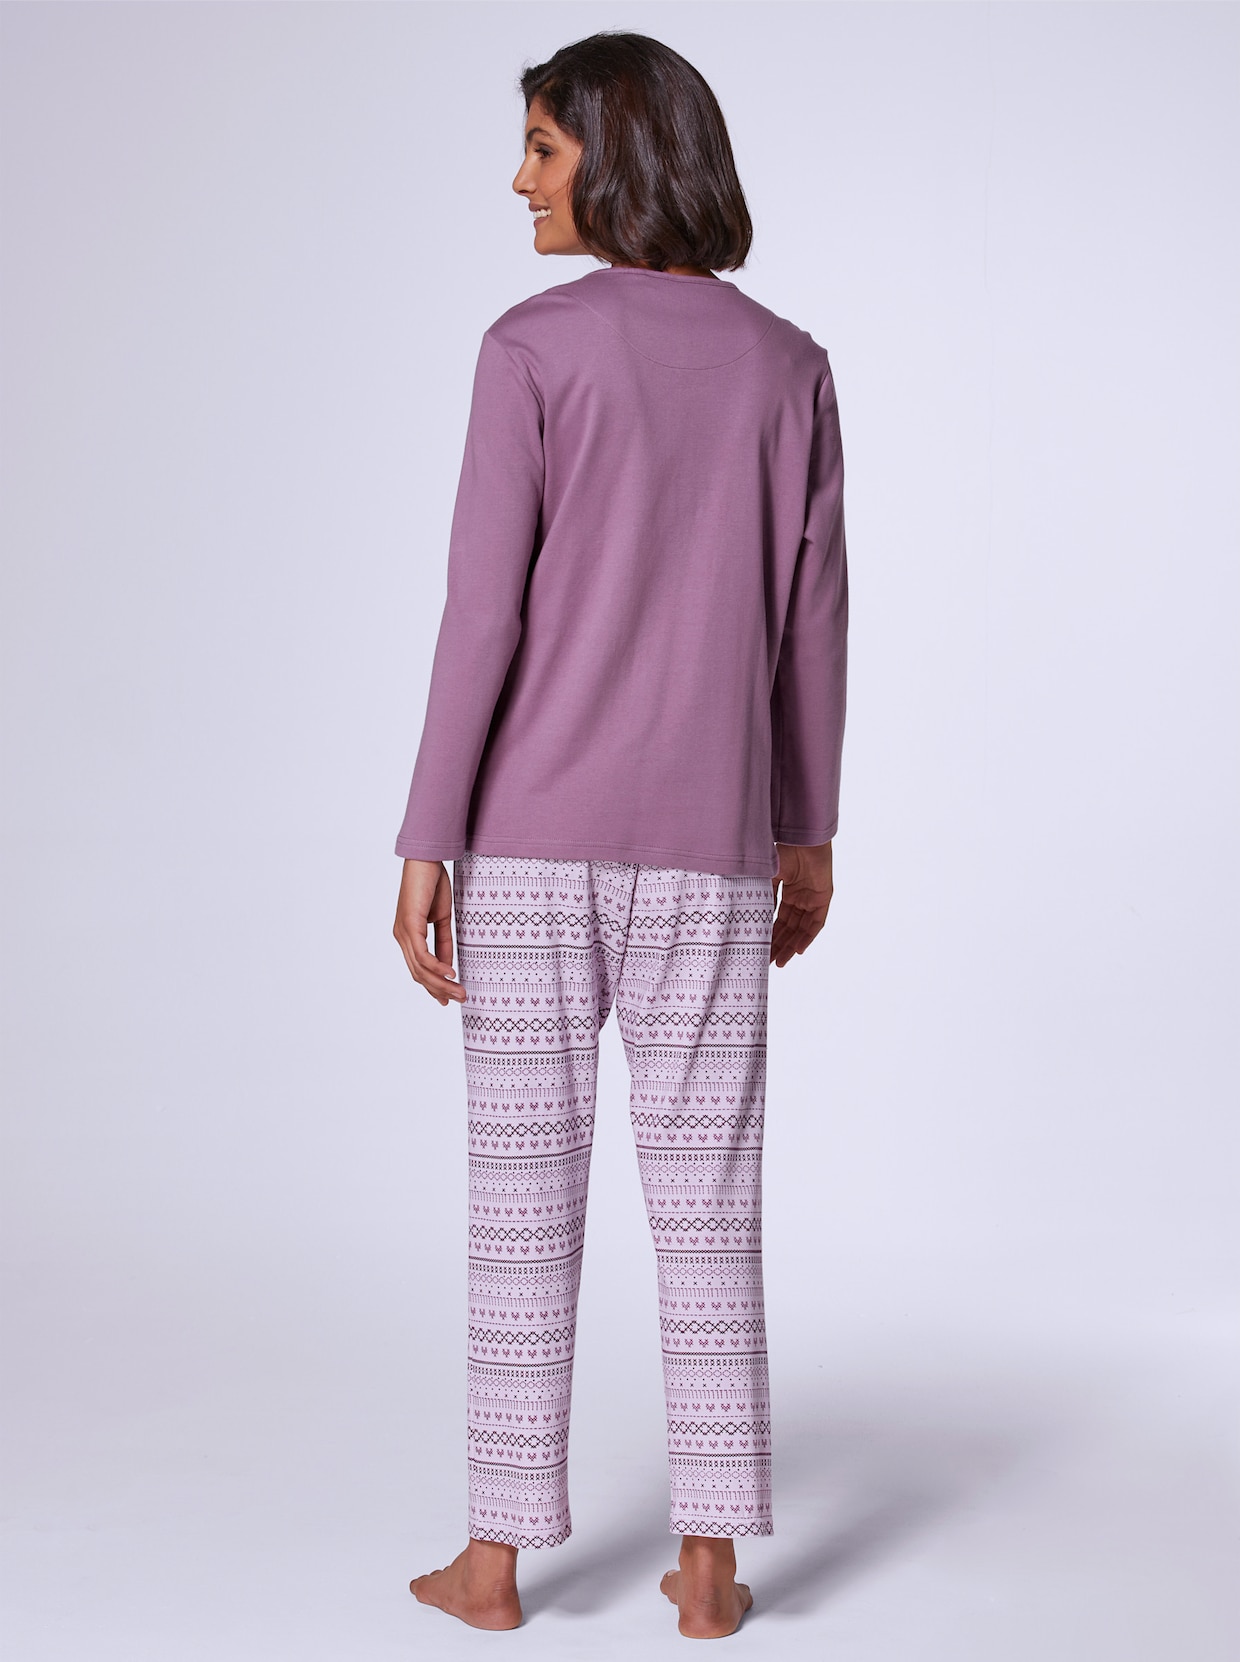 Comtessa Schlafanzug - violett-rosé-bedruckt